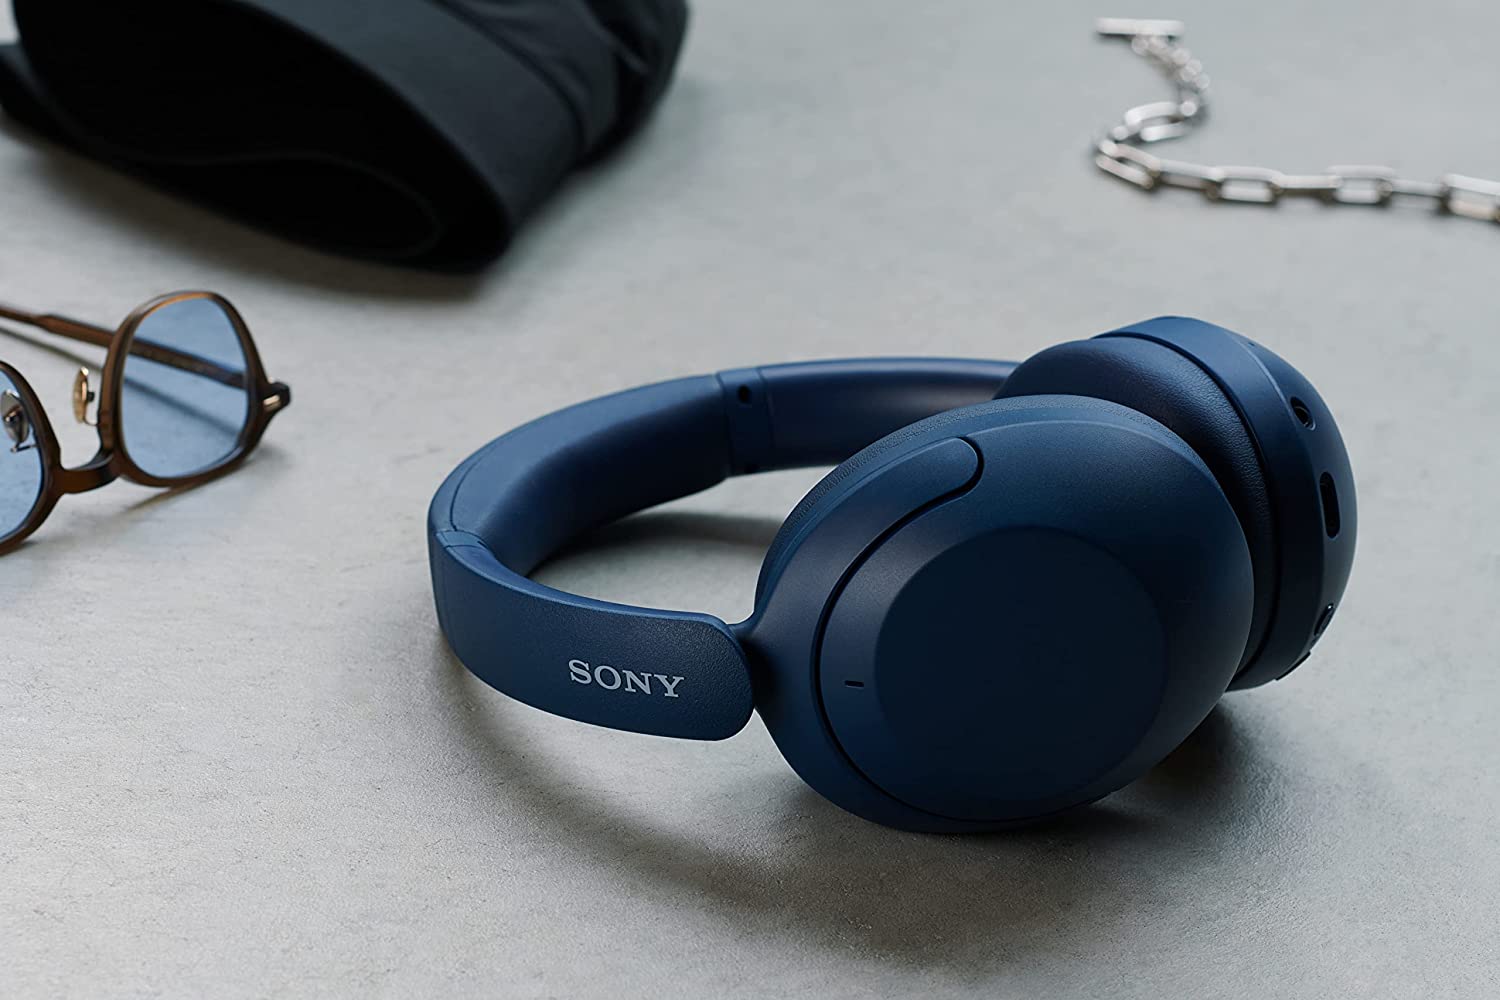 Tai nghe Bluetooth chống ồn Sony WH-XB910N - Hàng chính hãng - Bảo hành  chính hãng Sony 12 tháng toàn quốc | Lazada.vn